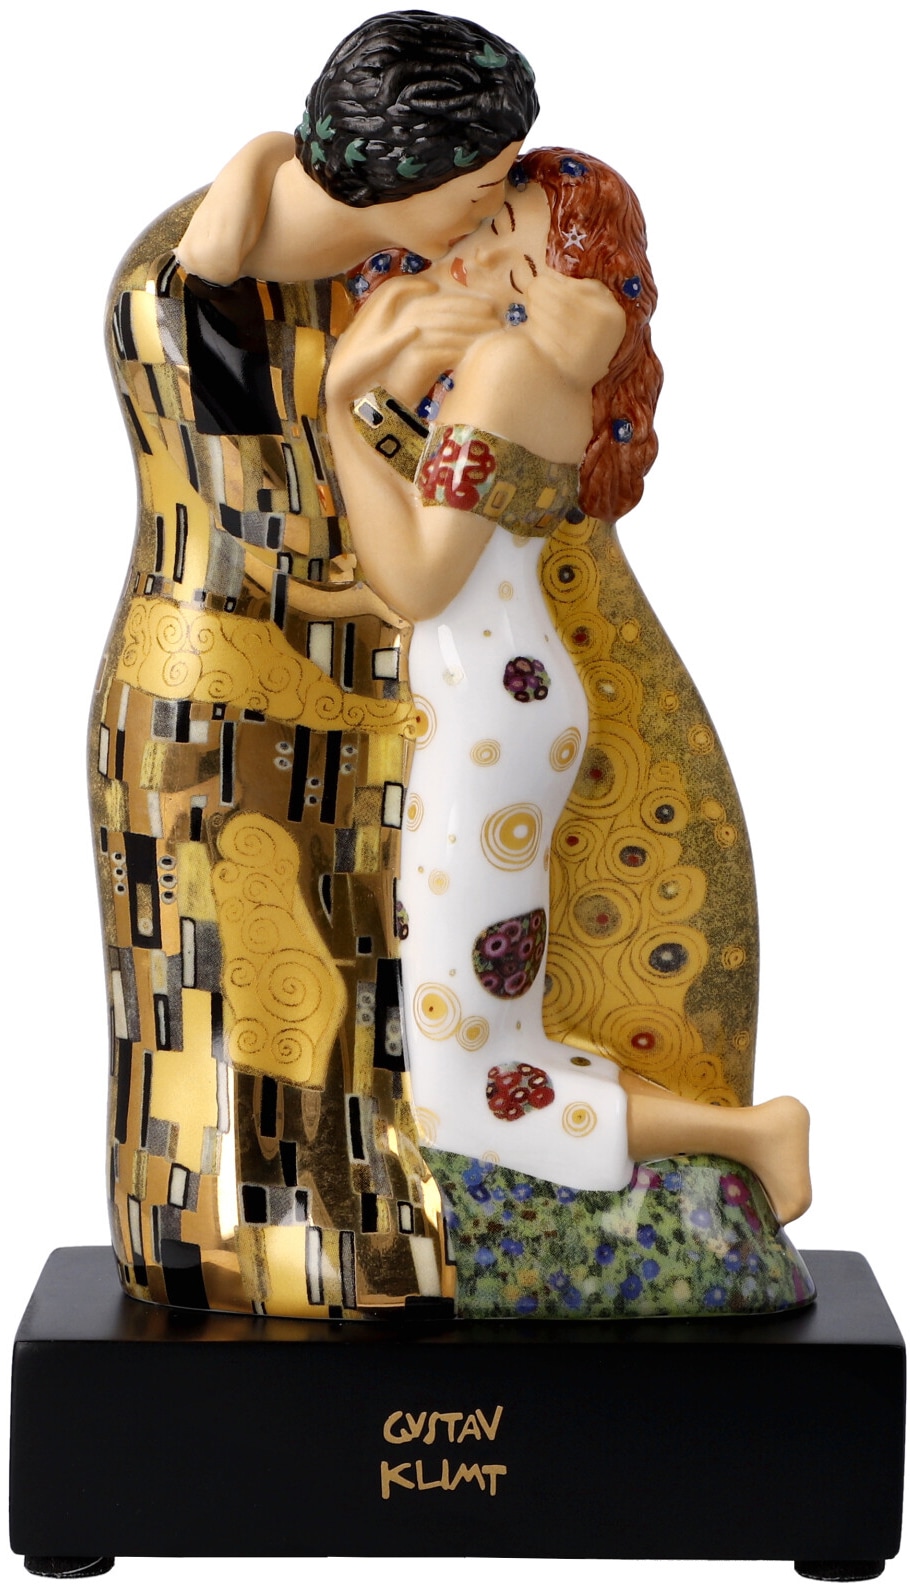 Goebel Sammelfigur »Klimt«, Artis Orbis,Klimt,Figur,Porzellan,Gustav Klimt - Der Kuss